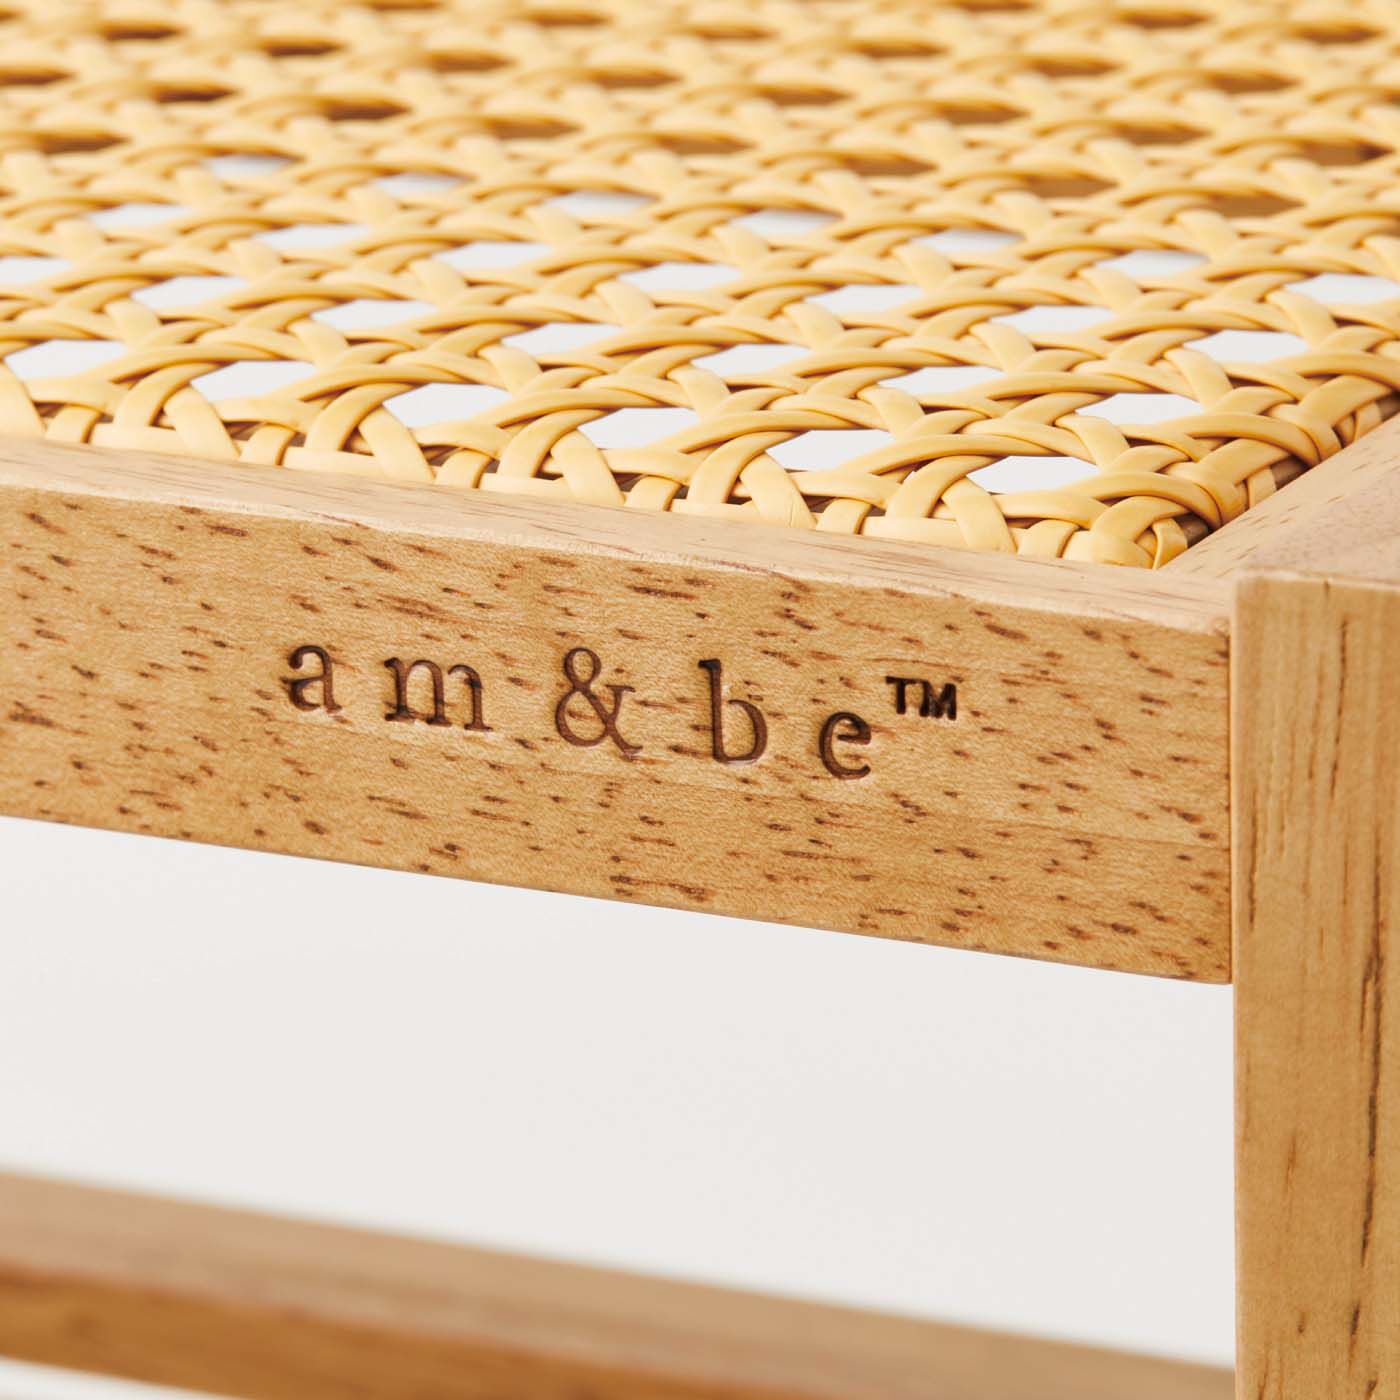 am&be|【8月分以降お届け】am＆be　ソファやベッドに差し込める ラタン風透かし編みサイドテーブル|側面には「am&be」ロゴの焼き印入り。